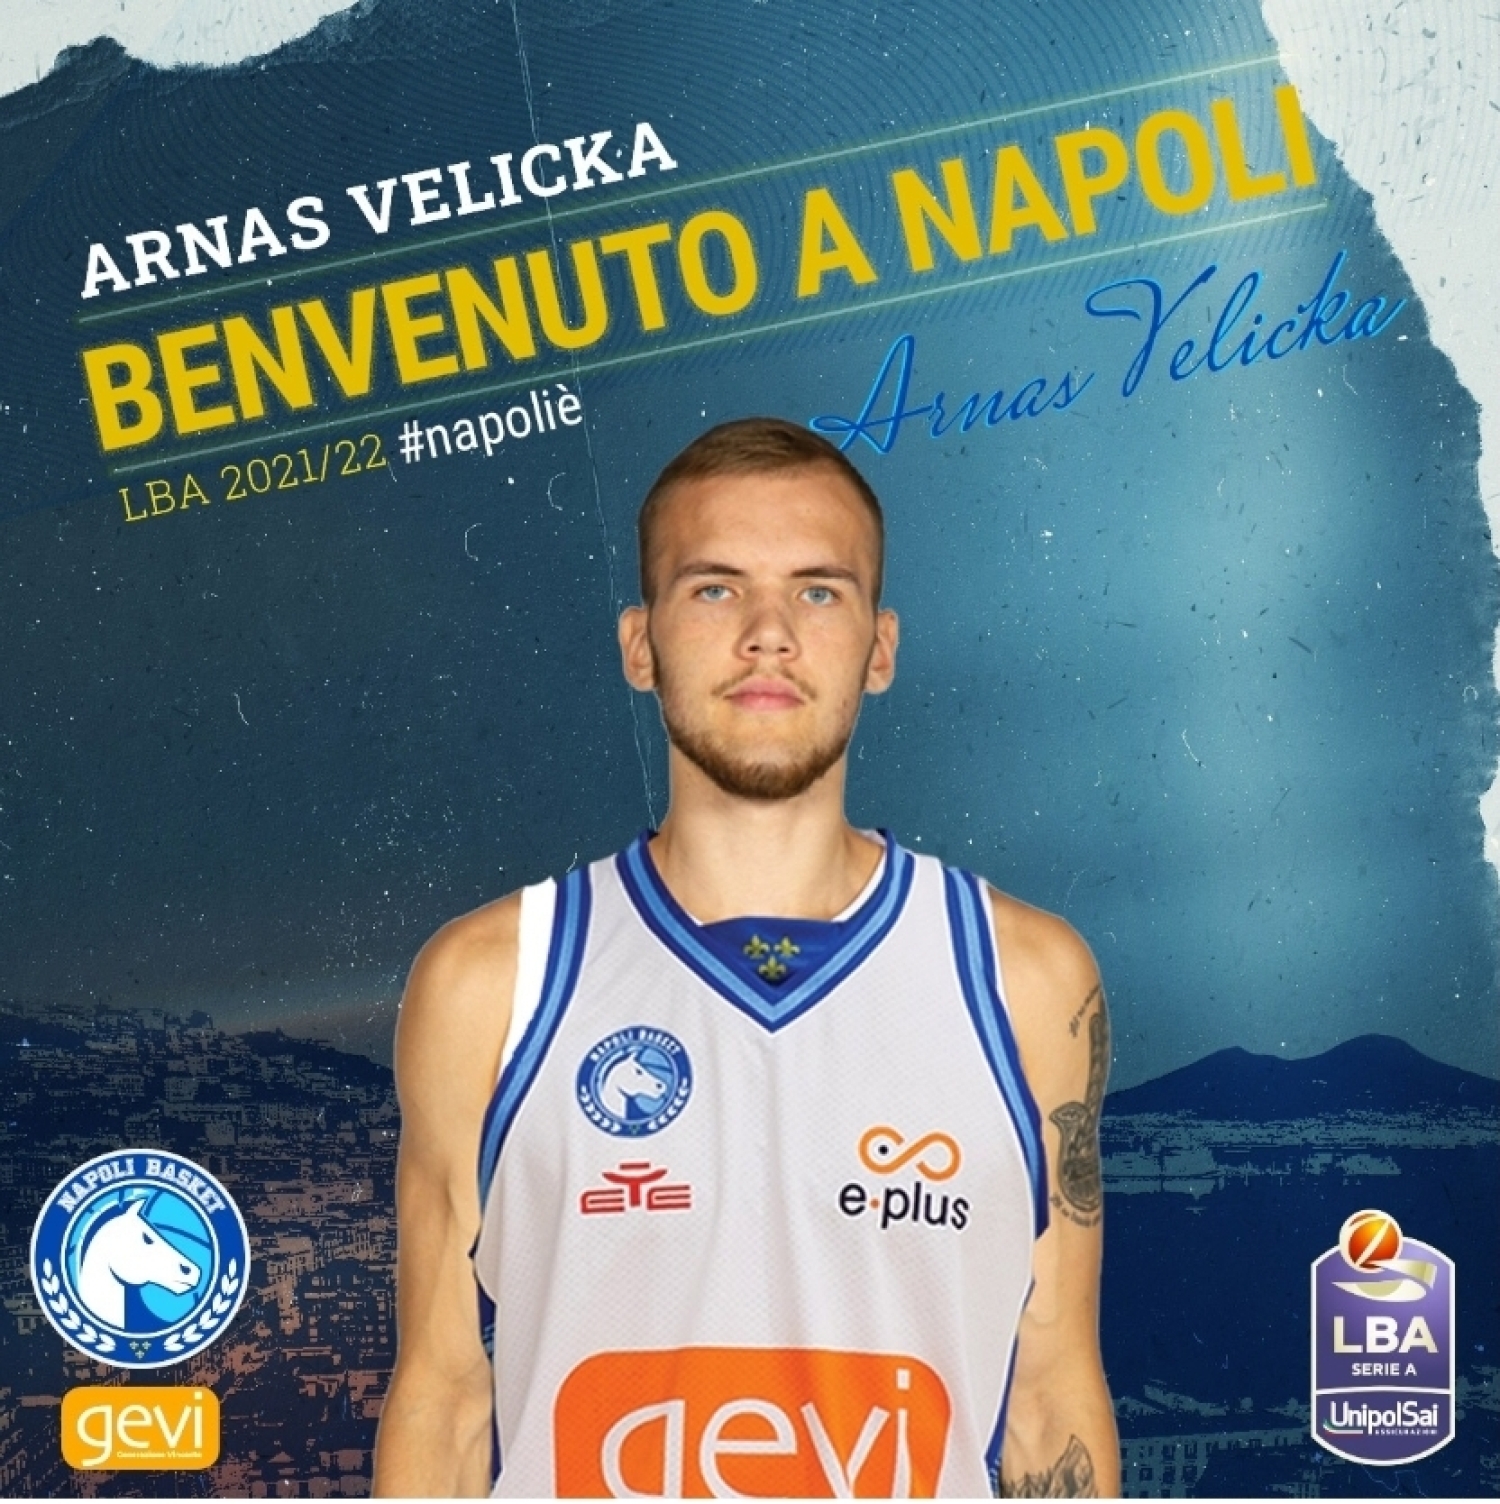 Gevi Napoli Basket : Ingaggiato il play lituano Arnas Velicka .Grassi : " Giocatore di talento, obiettivo di Coach e società"